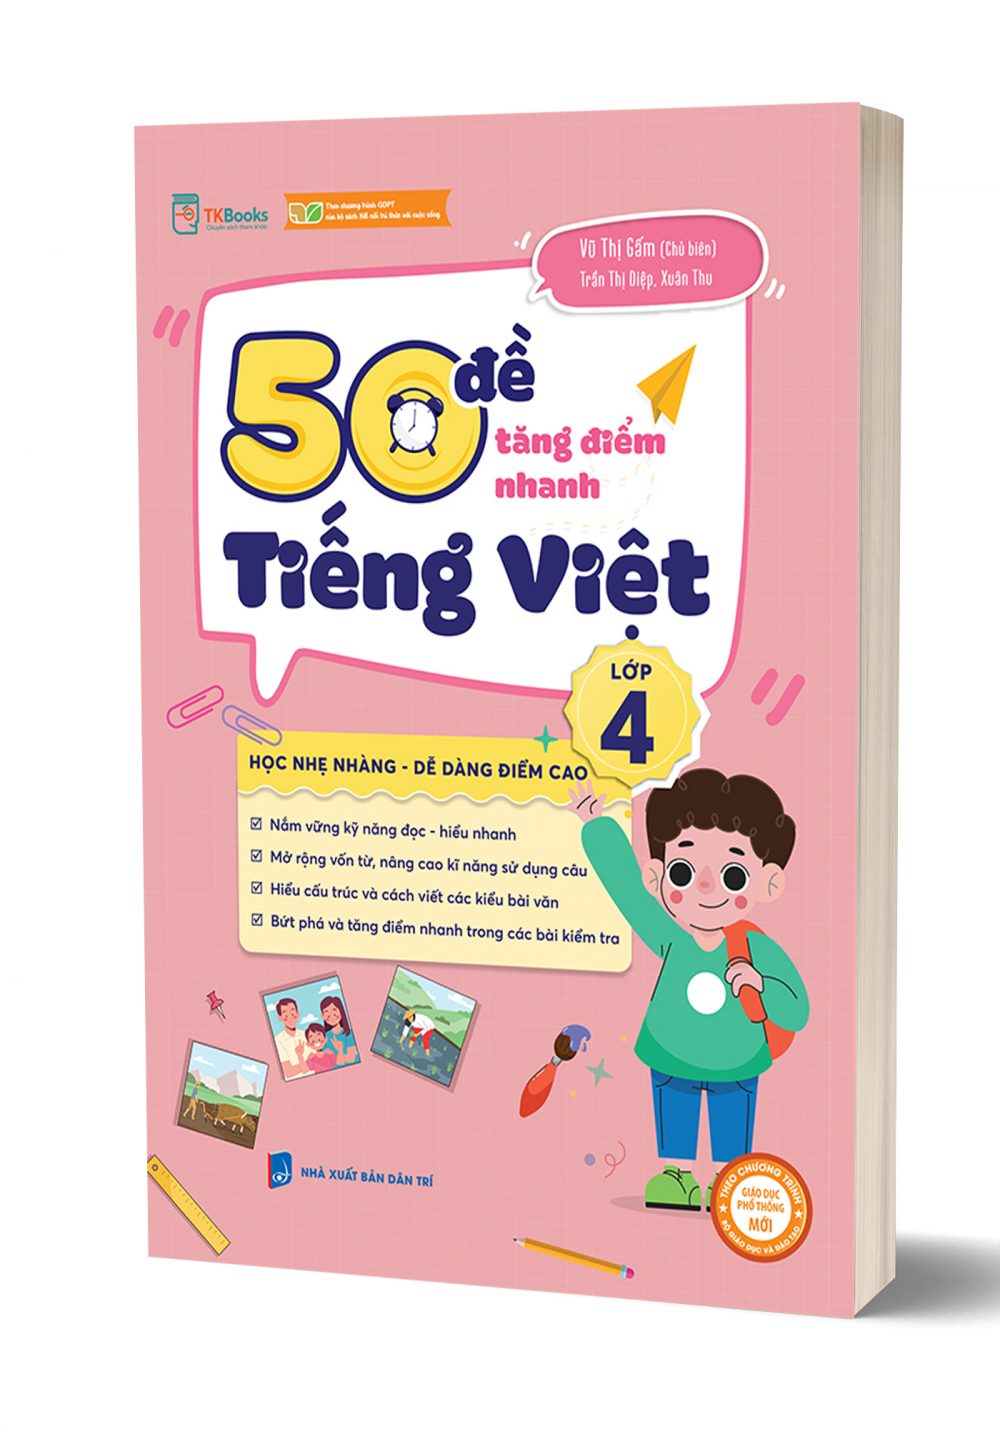 50 đề tăng điểm nhanh Tiếng Việt lớp 4